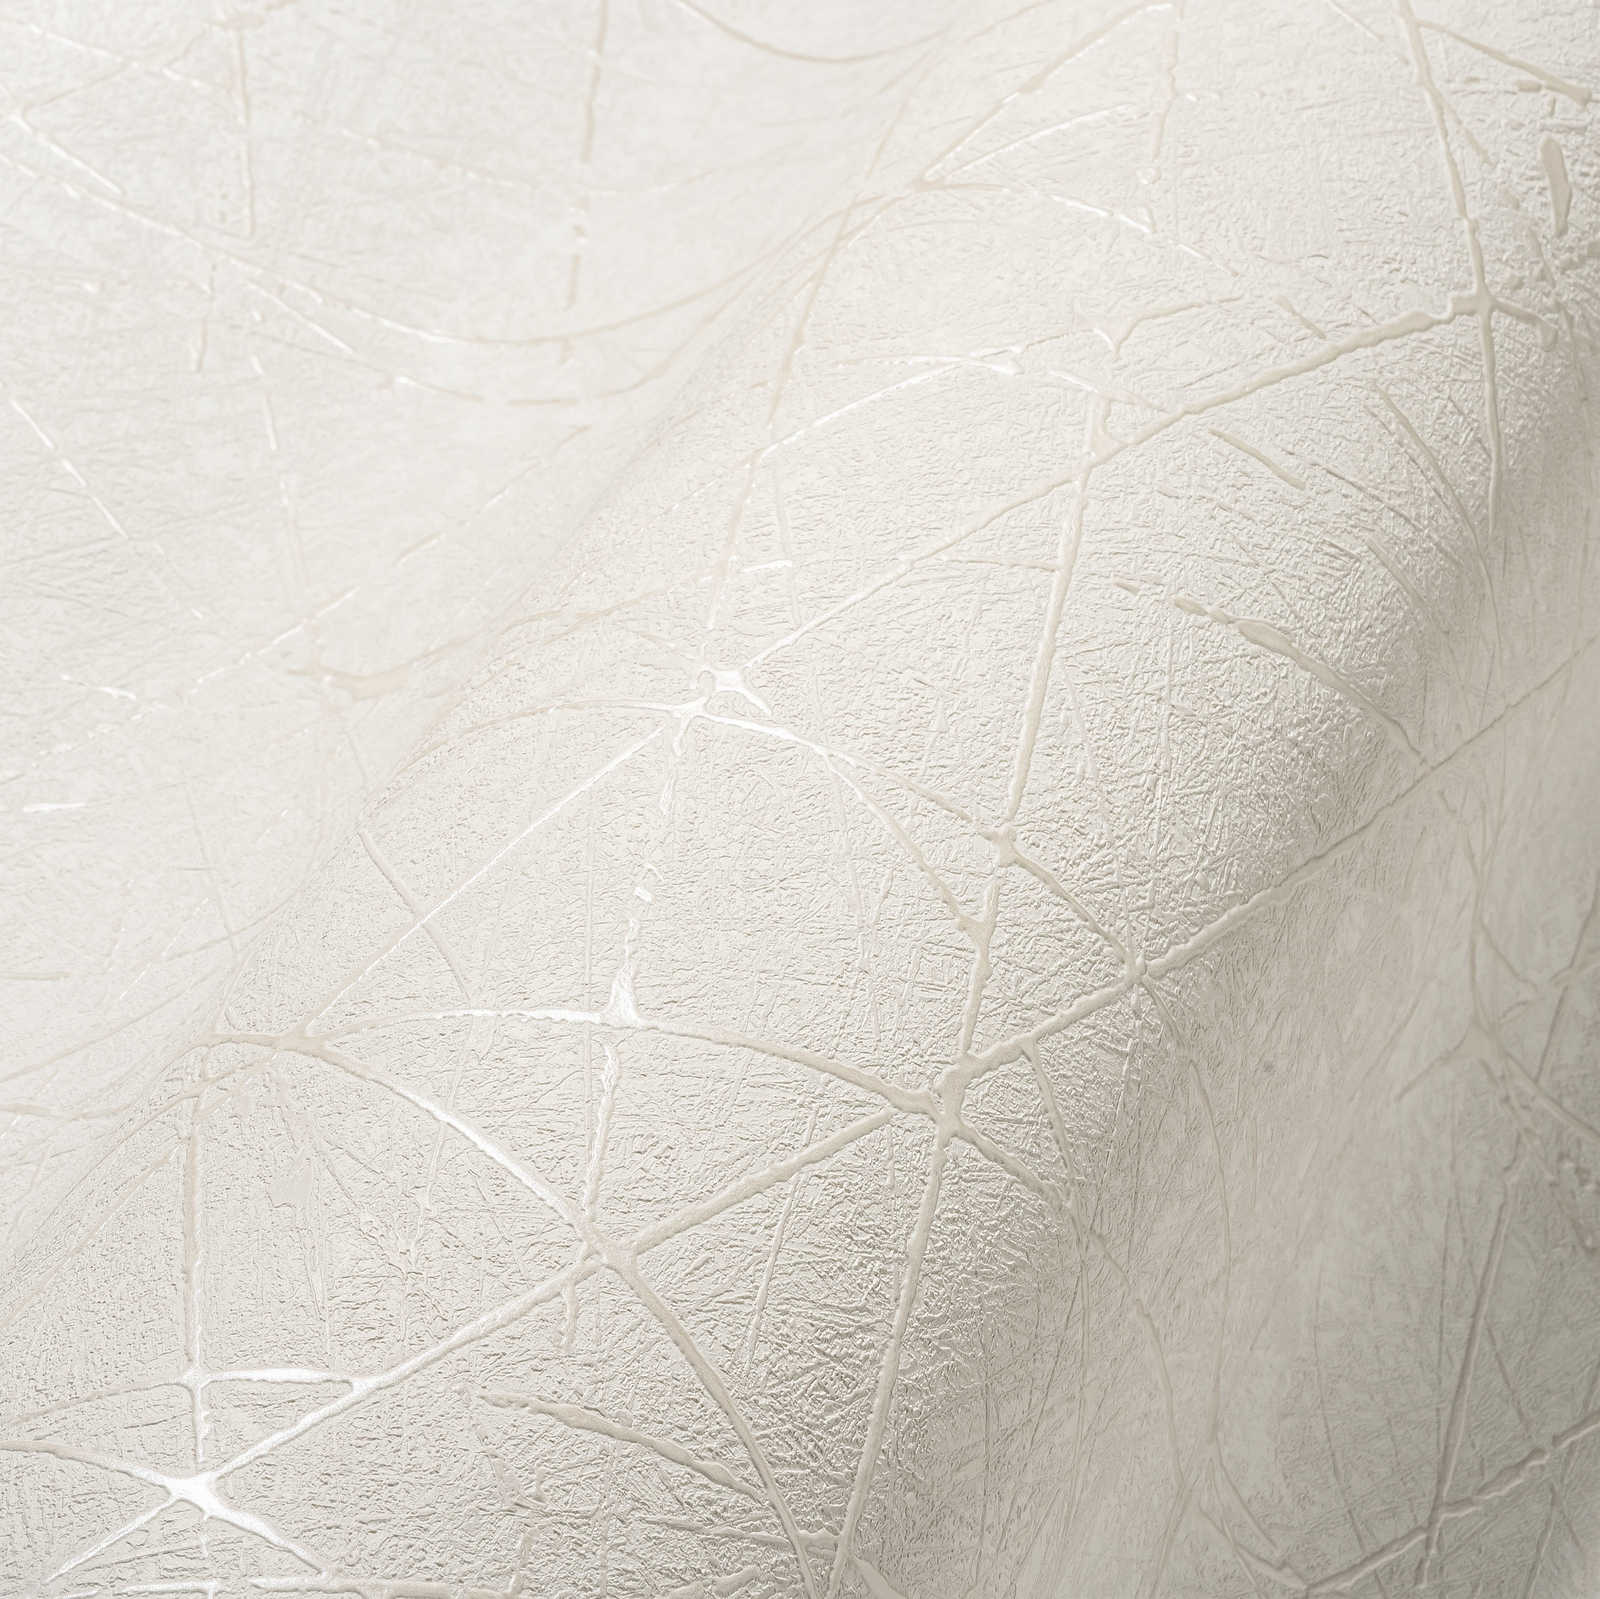             Non-woven wallpaper with graphic line pattern - white, cream, silver
        